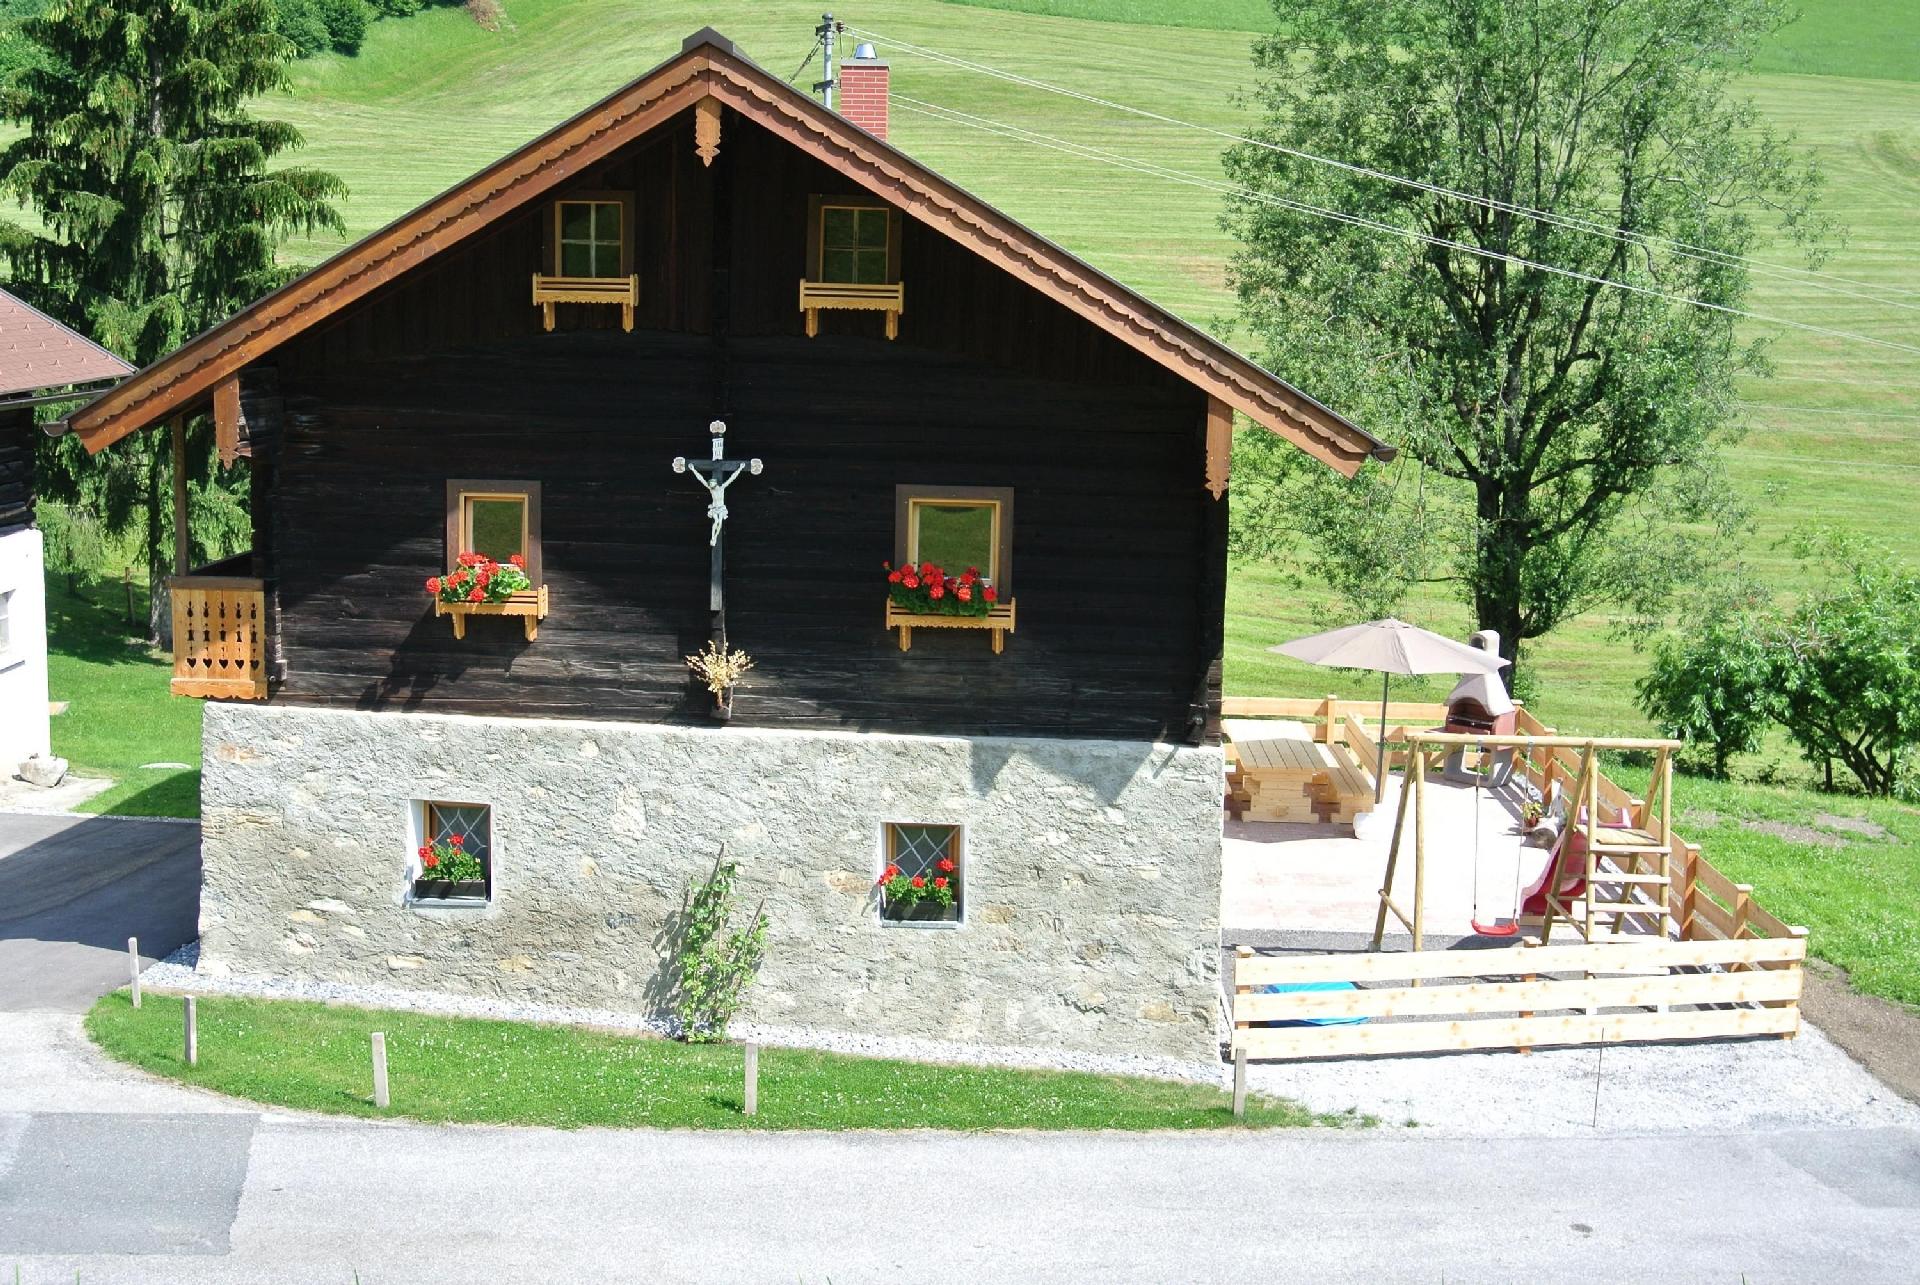 Ferienhaus in Sankt Veit Im Pongau mit Große Ferienhaus in Österreich